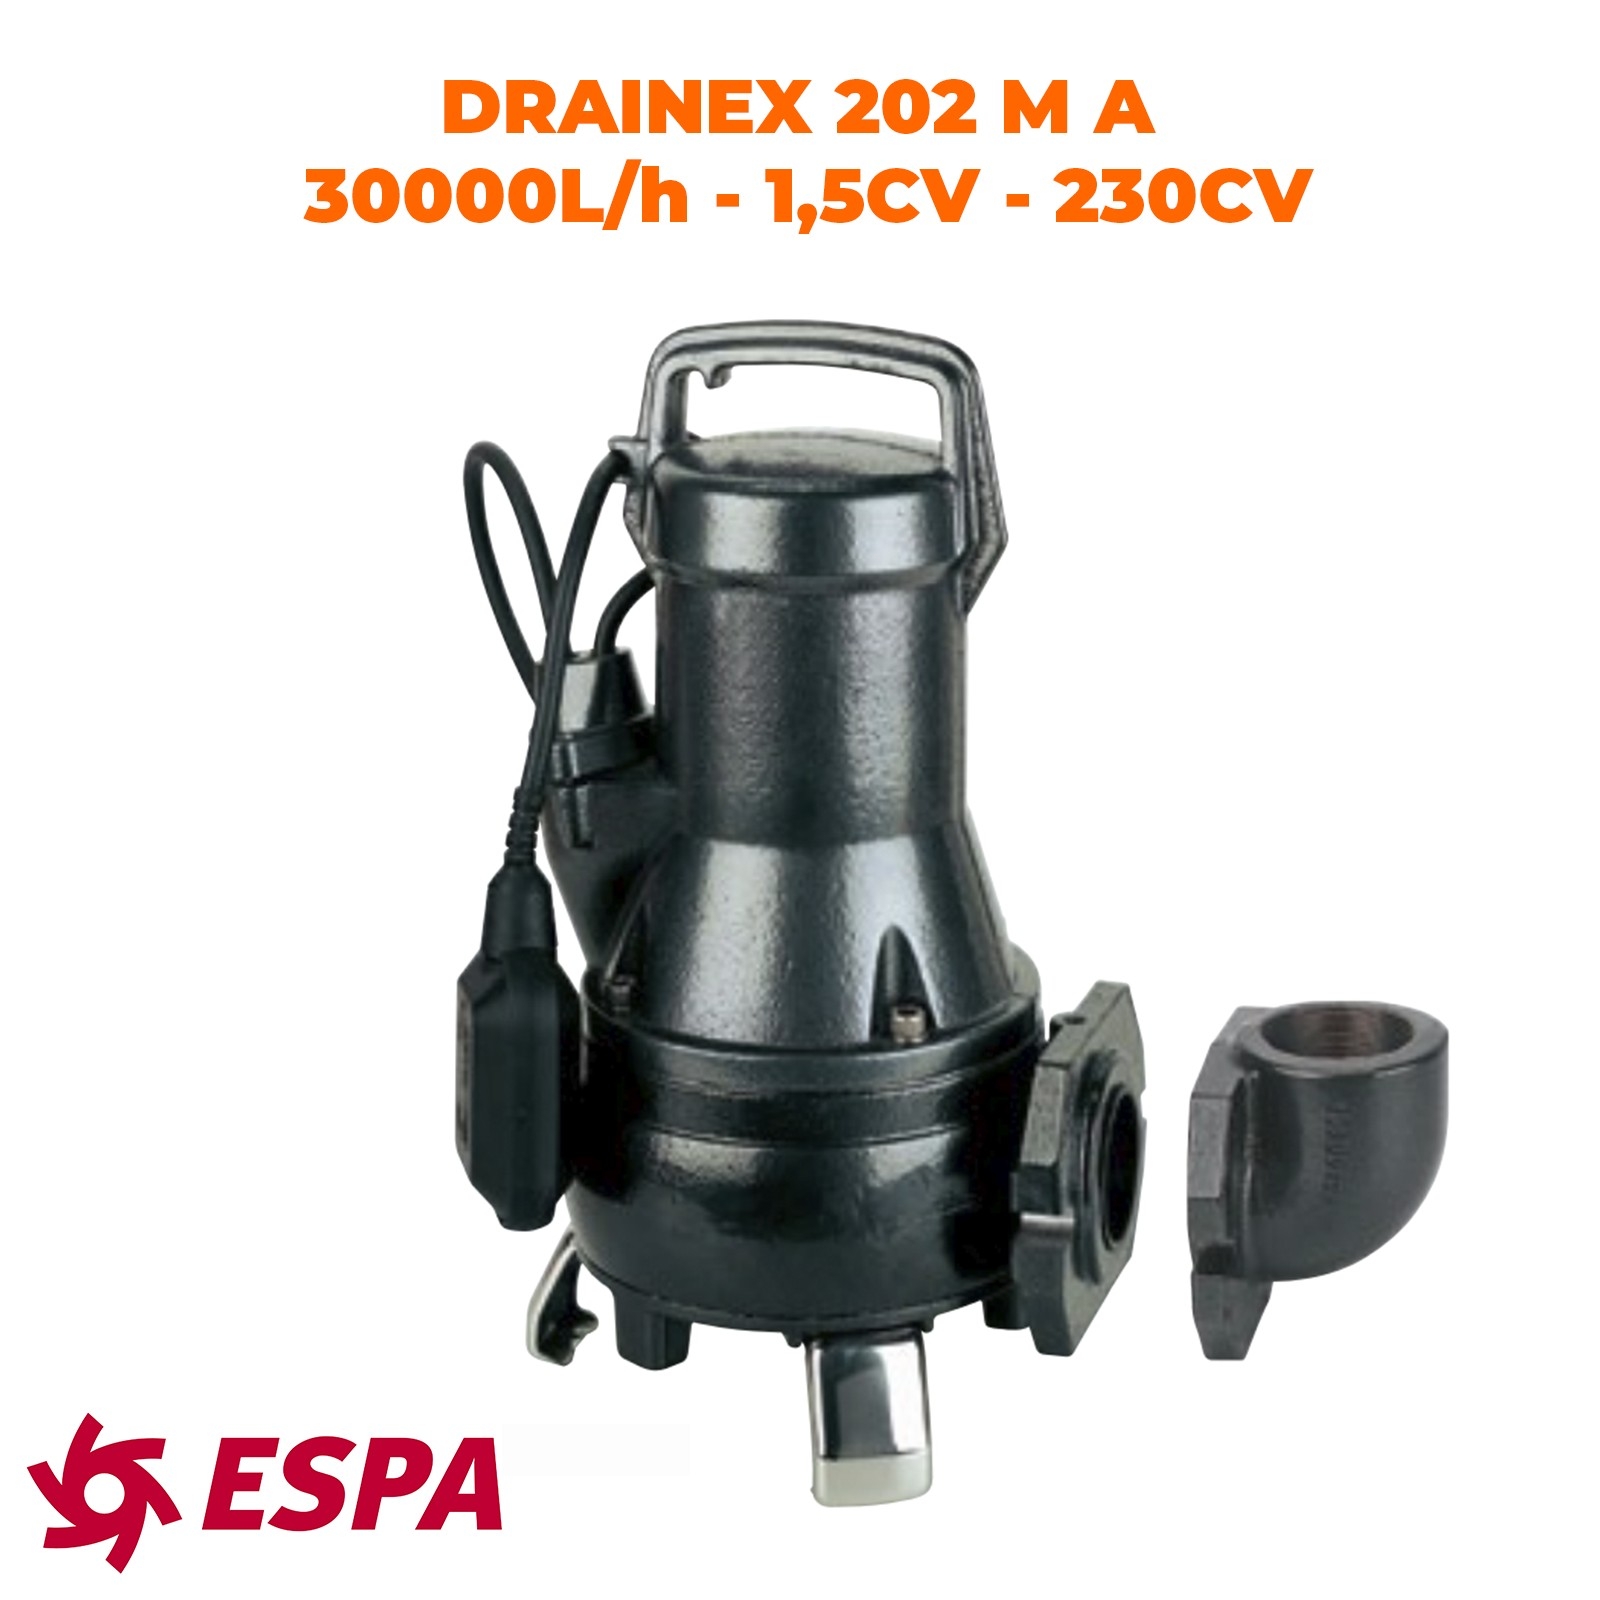 ESPA Pompe submersible de drainage pour eaux usées DRAINEX 202 MA - 30.000L/h - 16,3m max.